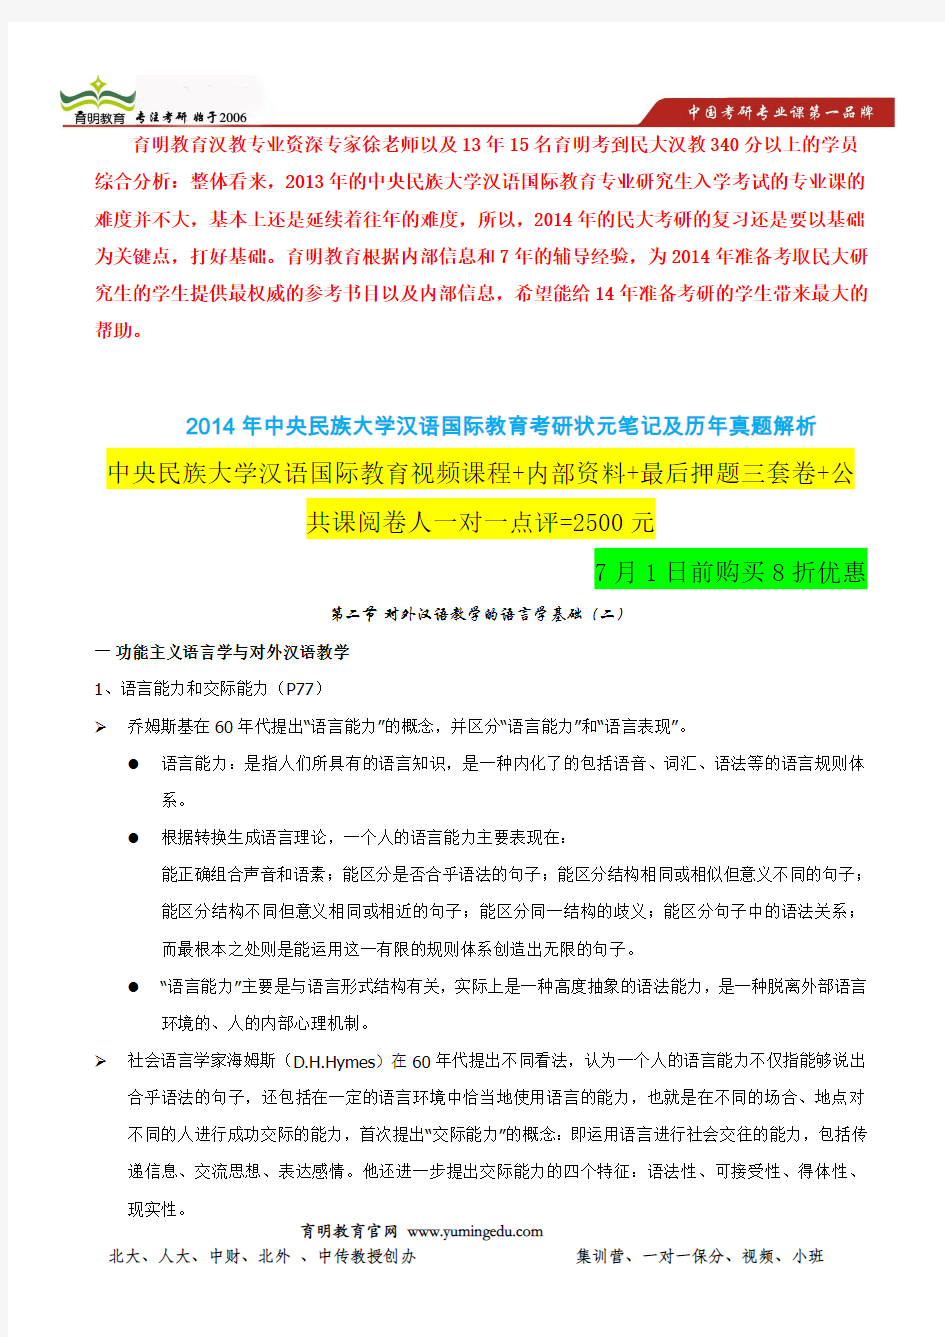 中央民族大学主办辅导班-第二节 对外汉语教学的语言学基础(二)